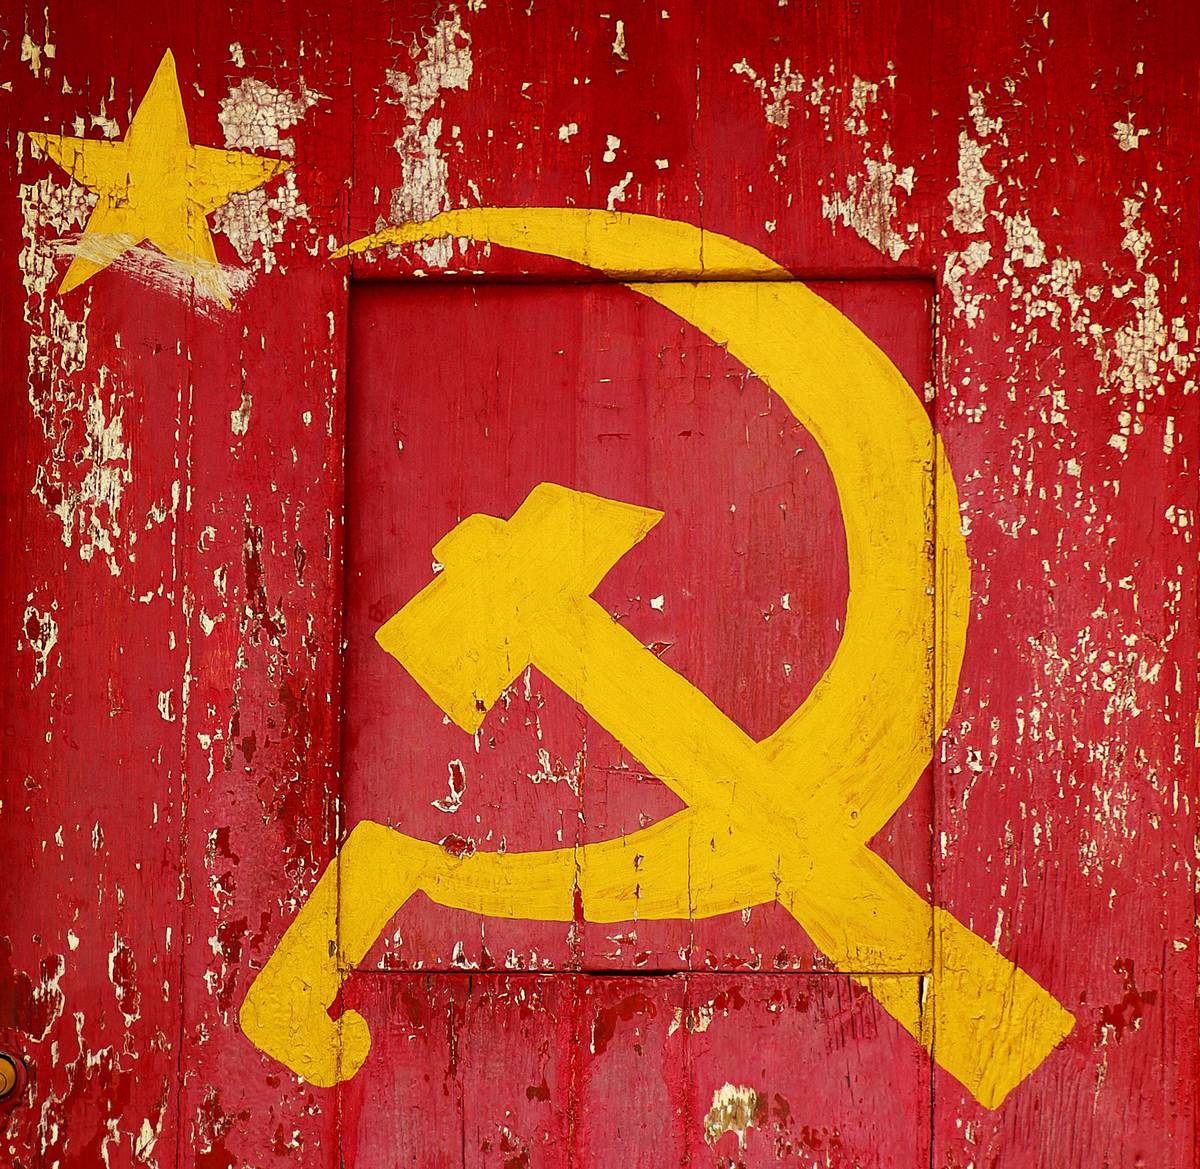 Распад СССР: миллионы жизней в обмен на «свободу и независимость»